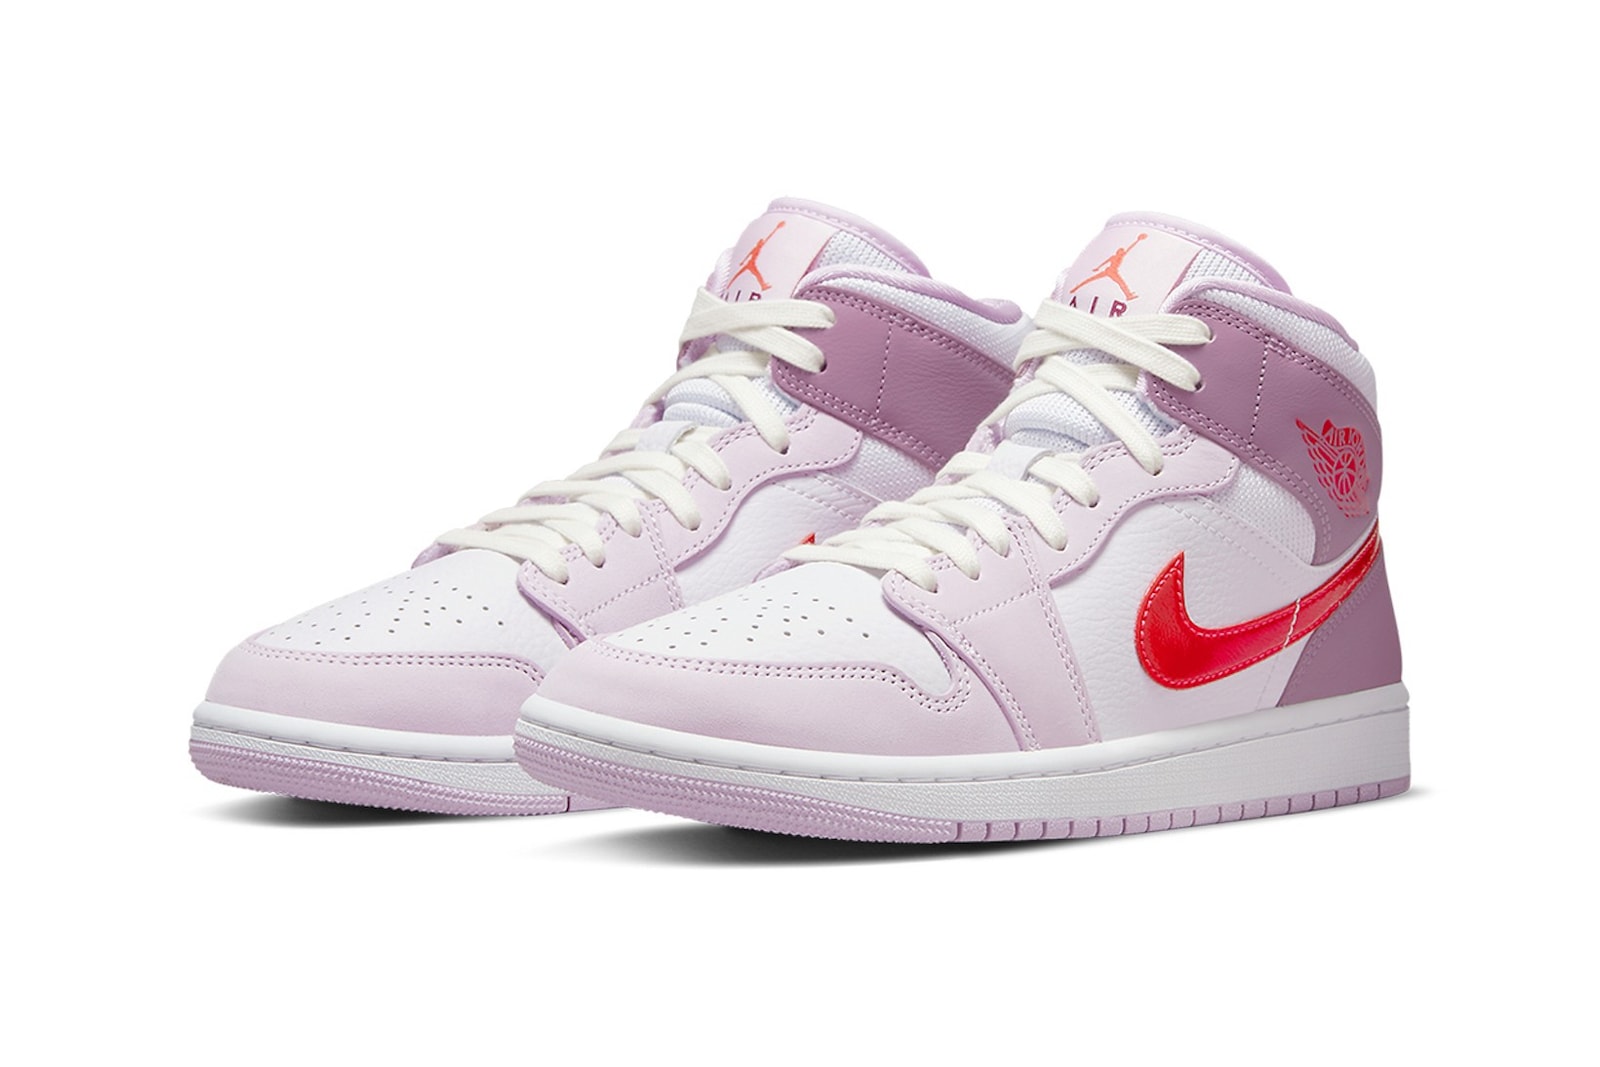 Nike Air Jordan Womens Releases 2022 1 3 4 5 6 11 Price Release Date